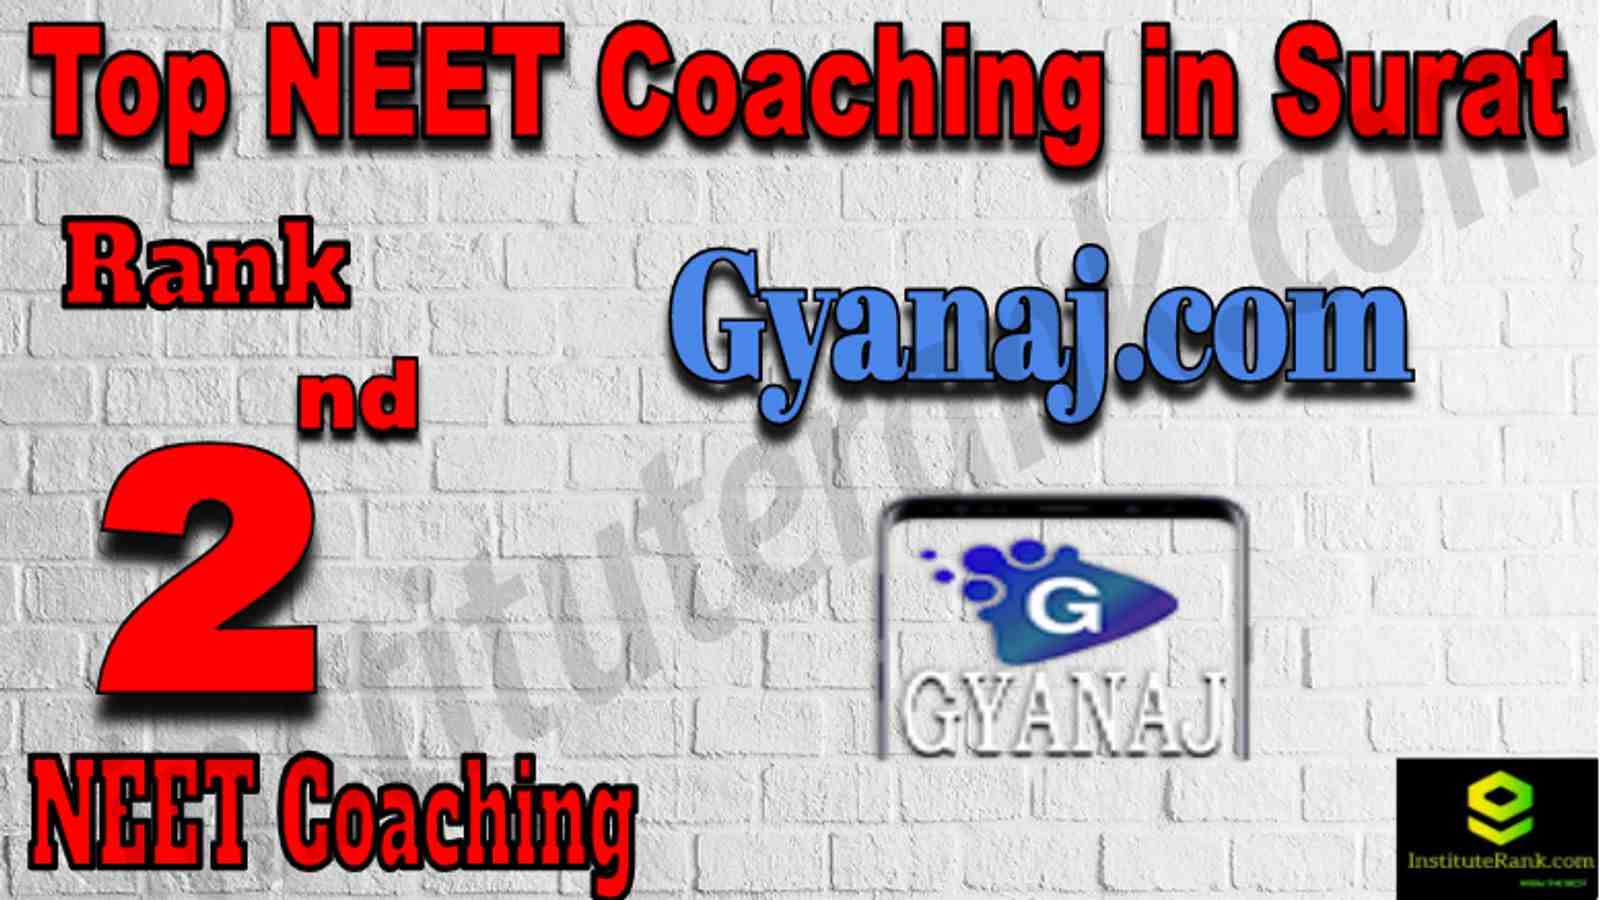 Rank 2 Top NEET Coaching in Surat